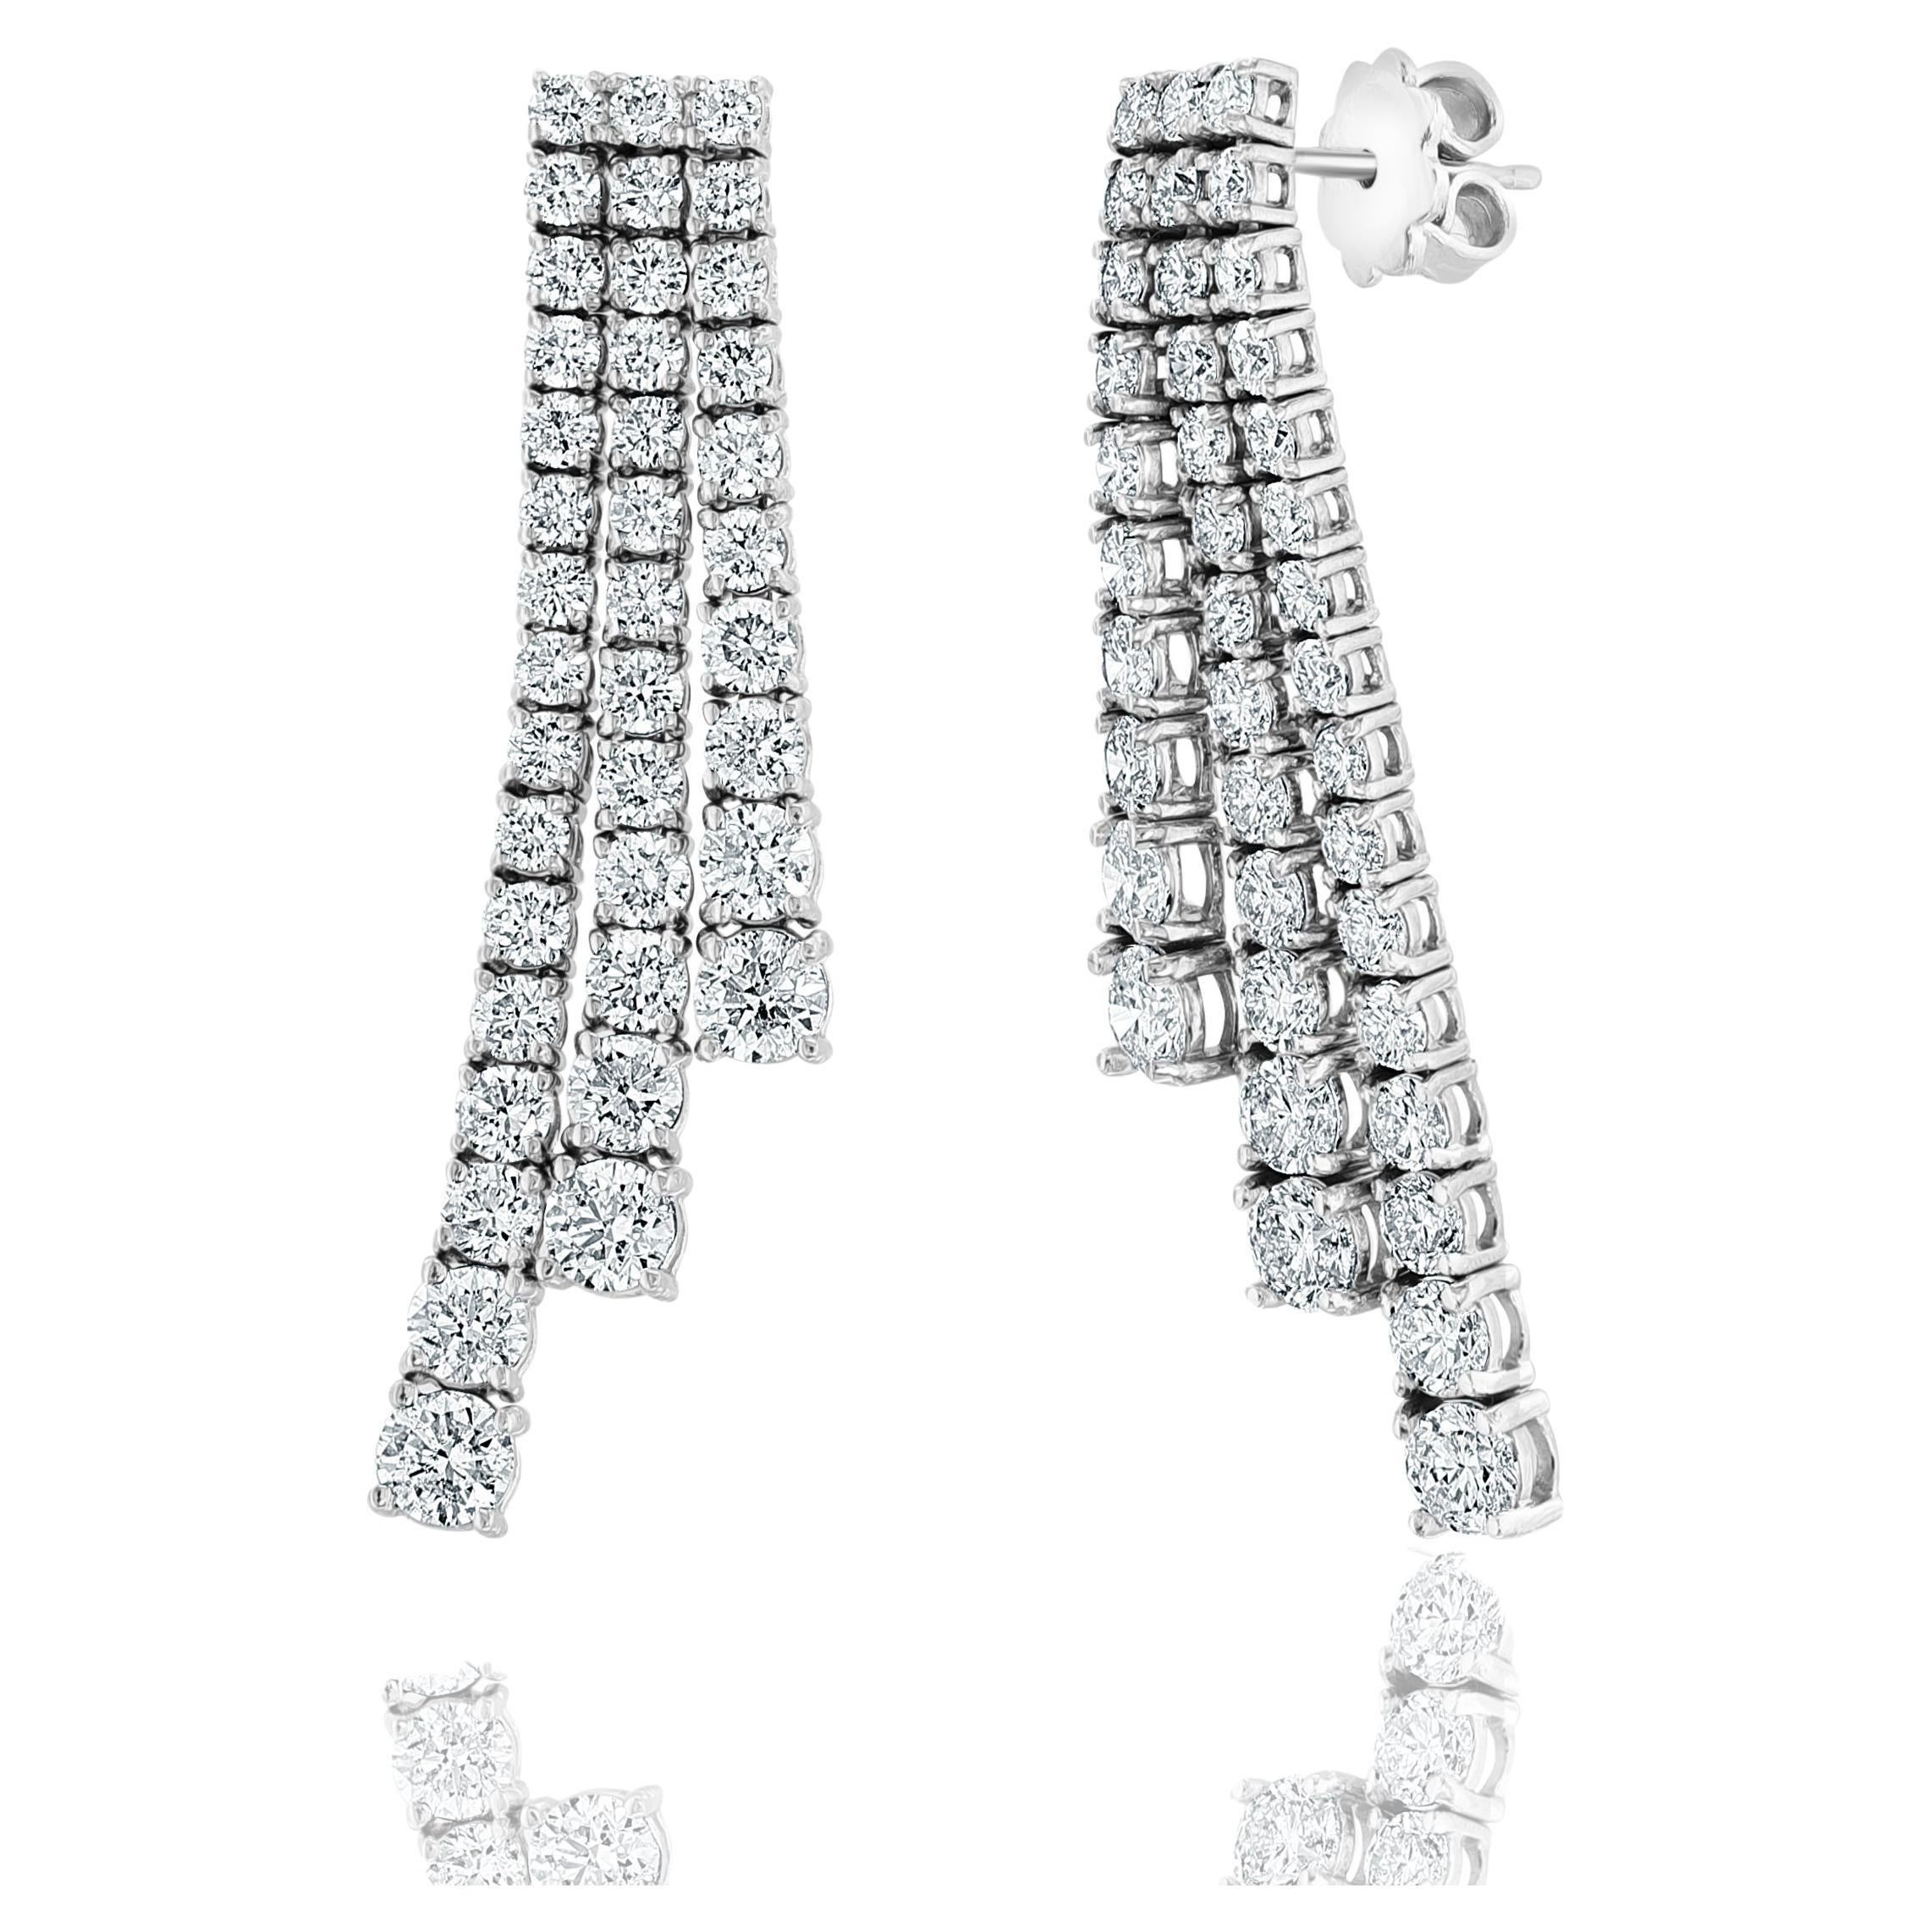 5.86 Carat Diamond Chandelier Earrings in 14k White Gold For Sale